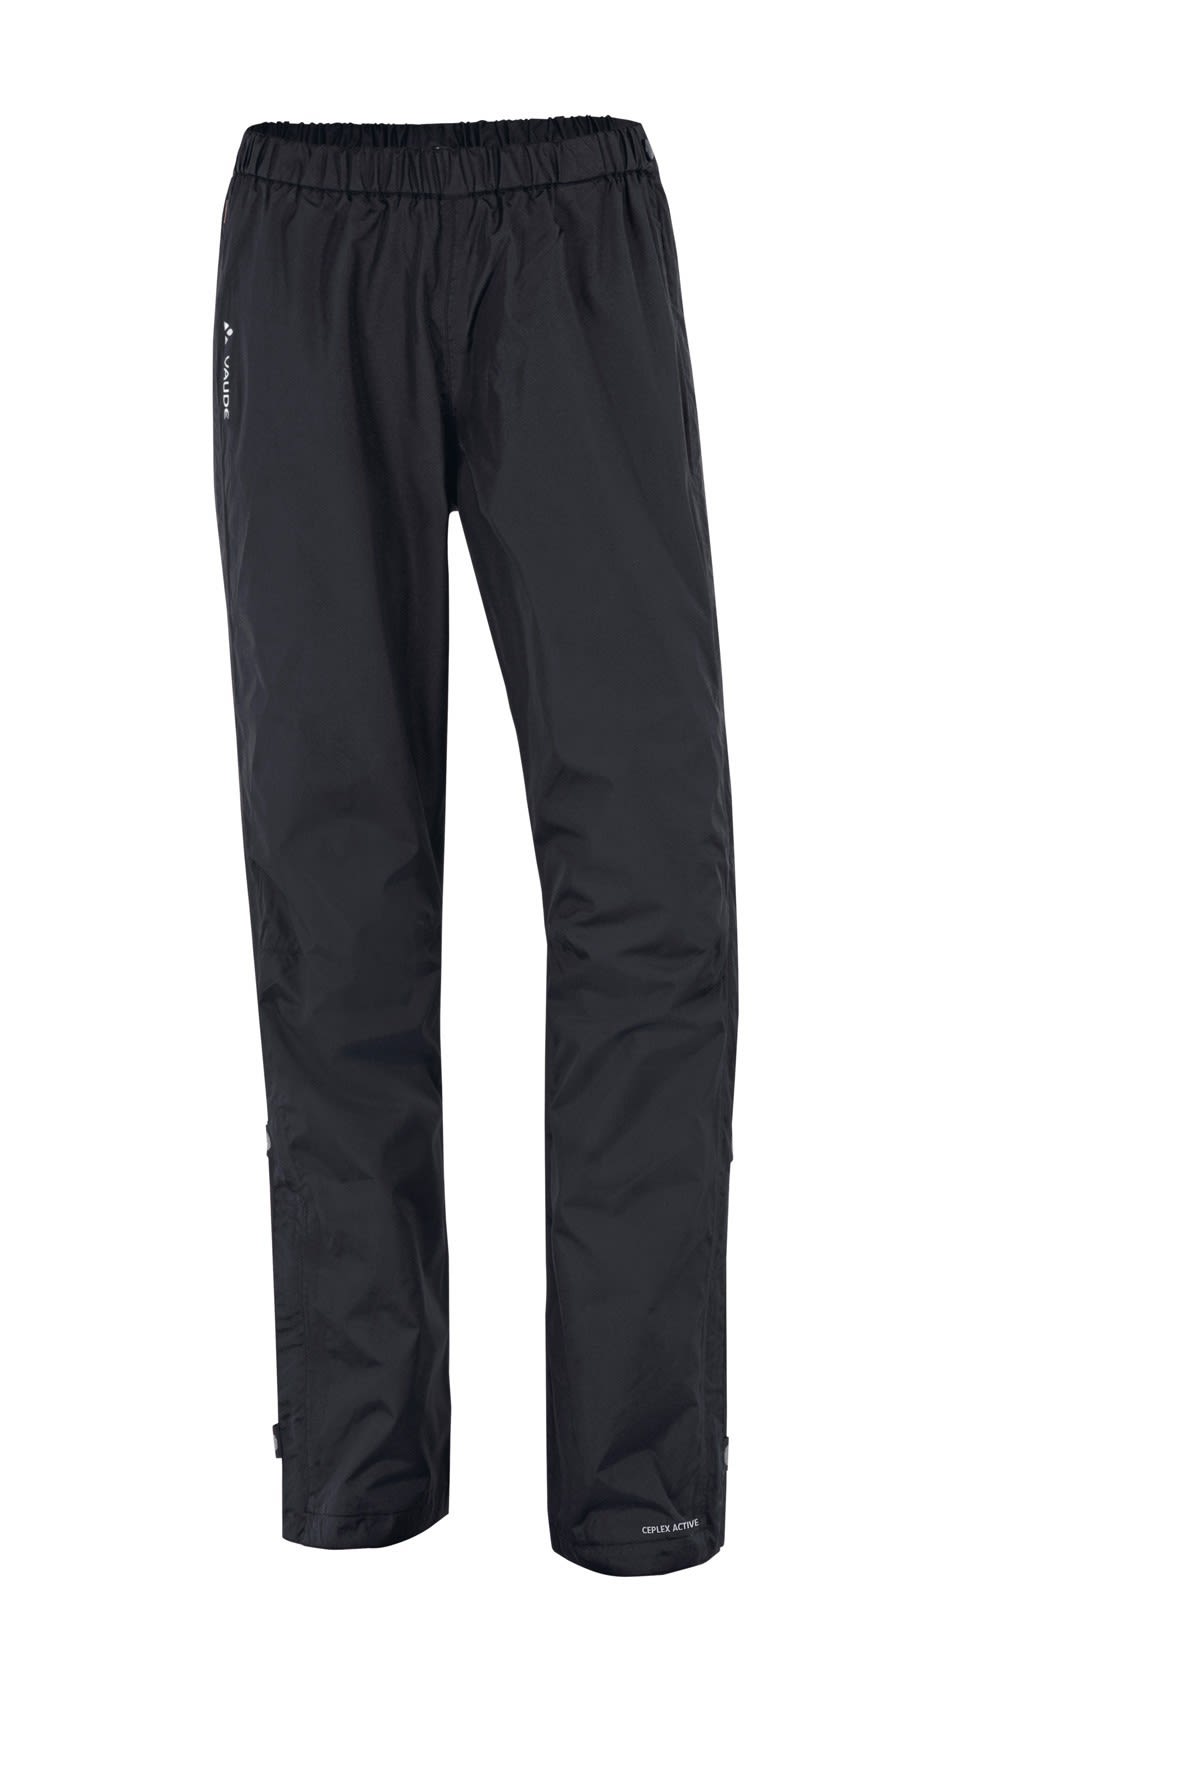 Vaude Fluid Full-Zip Pants Schwarz- Female Hosen- Grsse 40 - Farbe Black unter Vaude